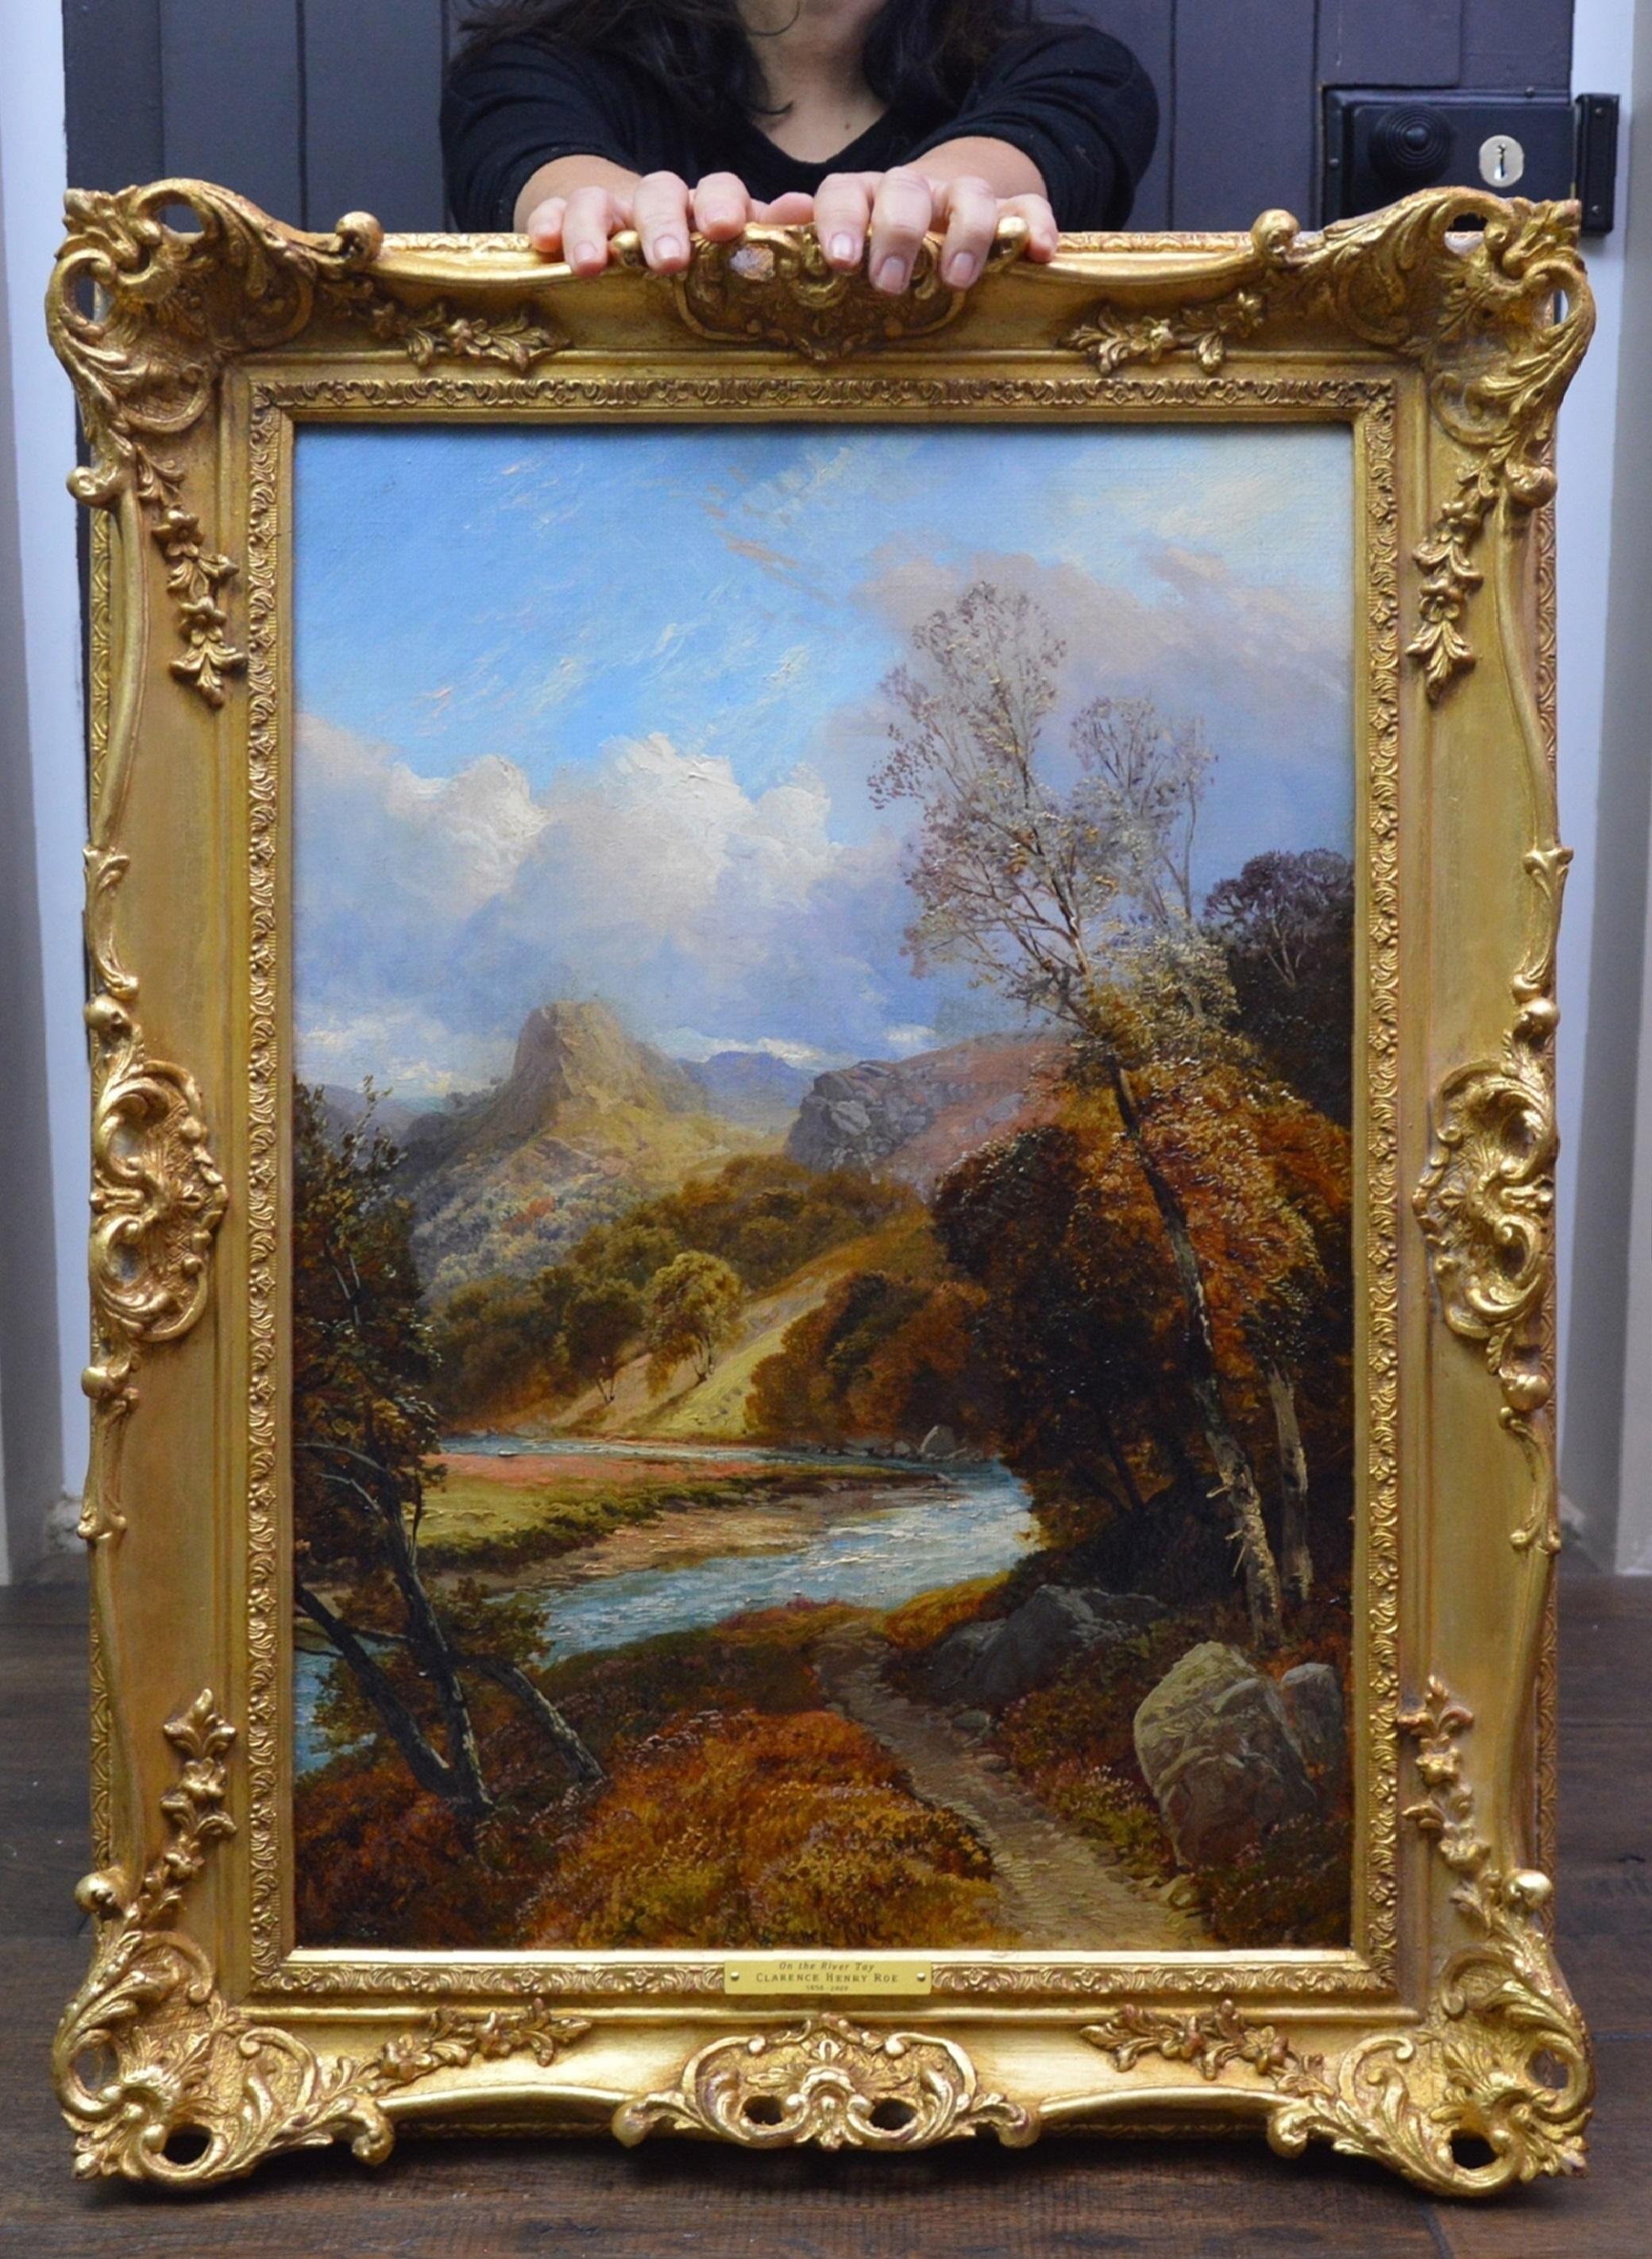 On the River Tay - Peinture à l'huile du 19ème siècle - Paysage des Highlands écossais - Painting de Clarence Roe